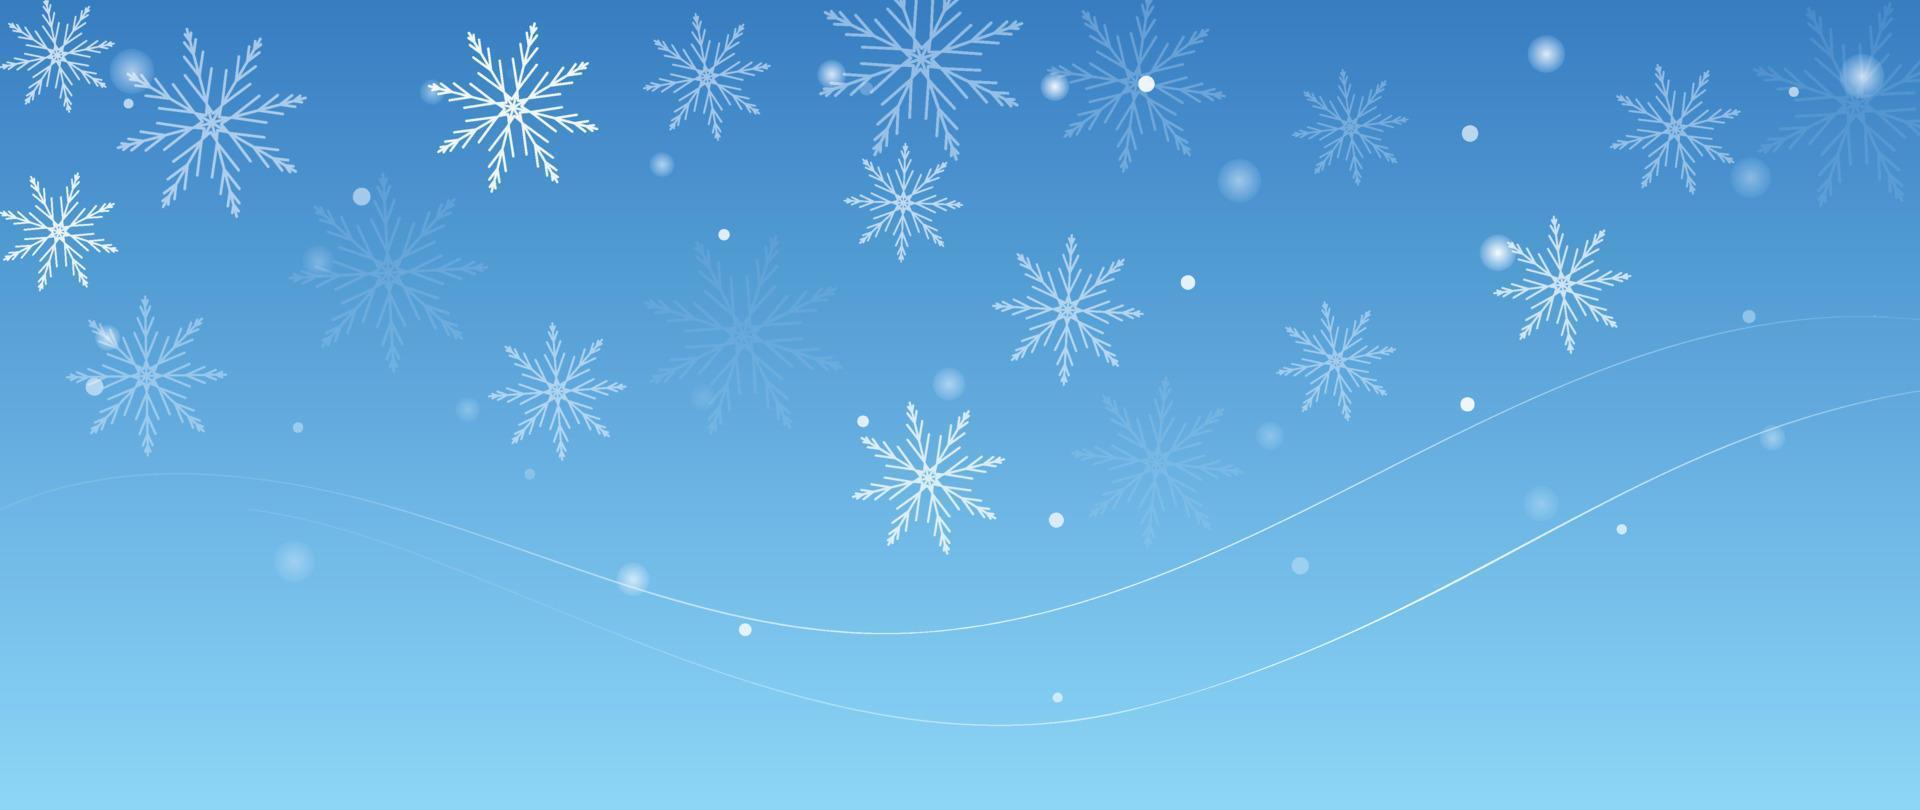 ilustração elegante do vetor do fundo do floco de neve do inverno. floco de neve decorativo de luxo e brilho em fundo azul claro. design adequado para cartão de convite, saudação, papel de parede, pôster, banner.